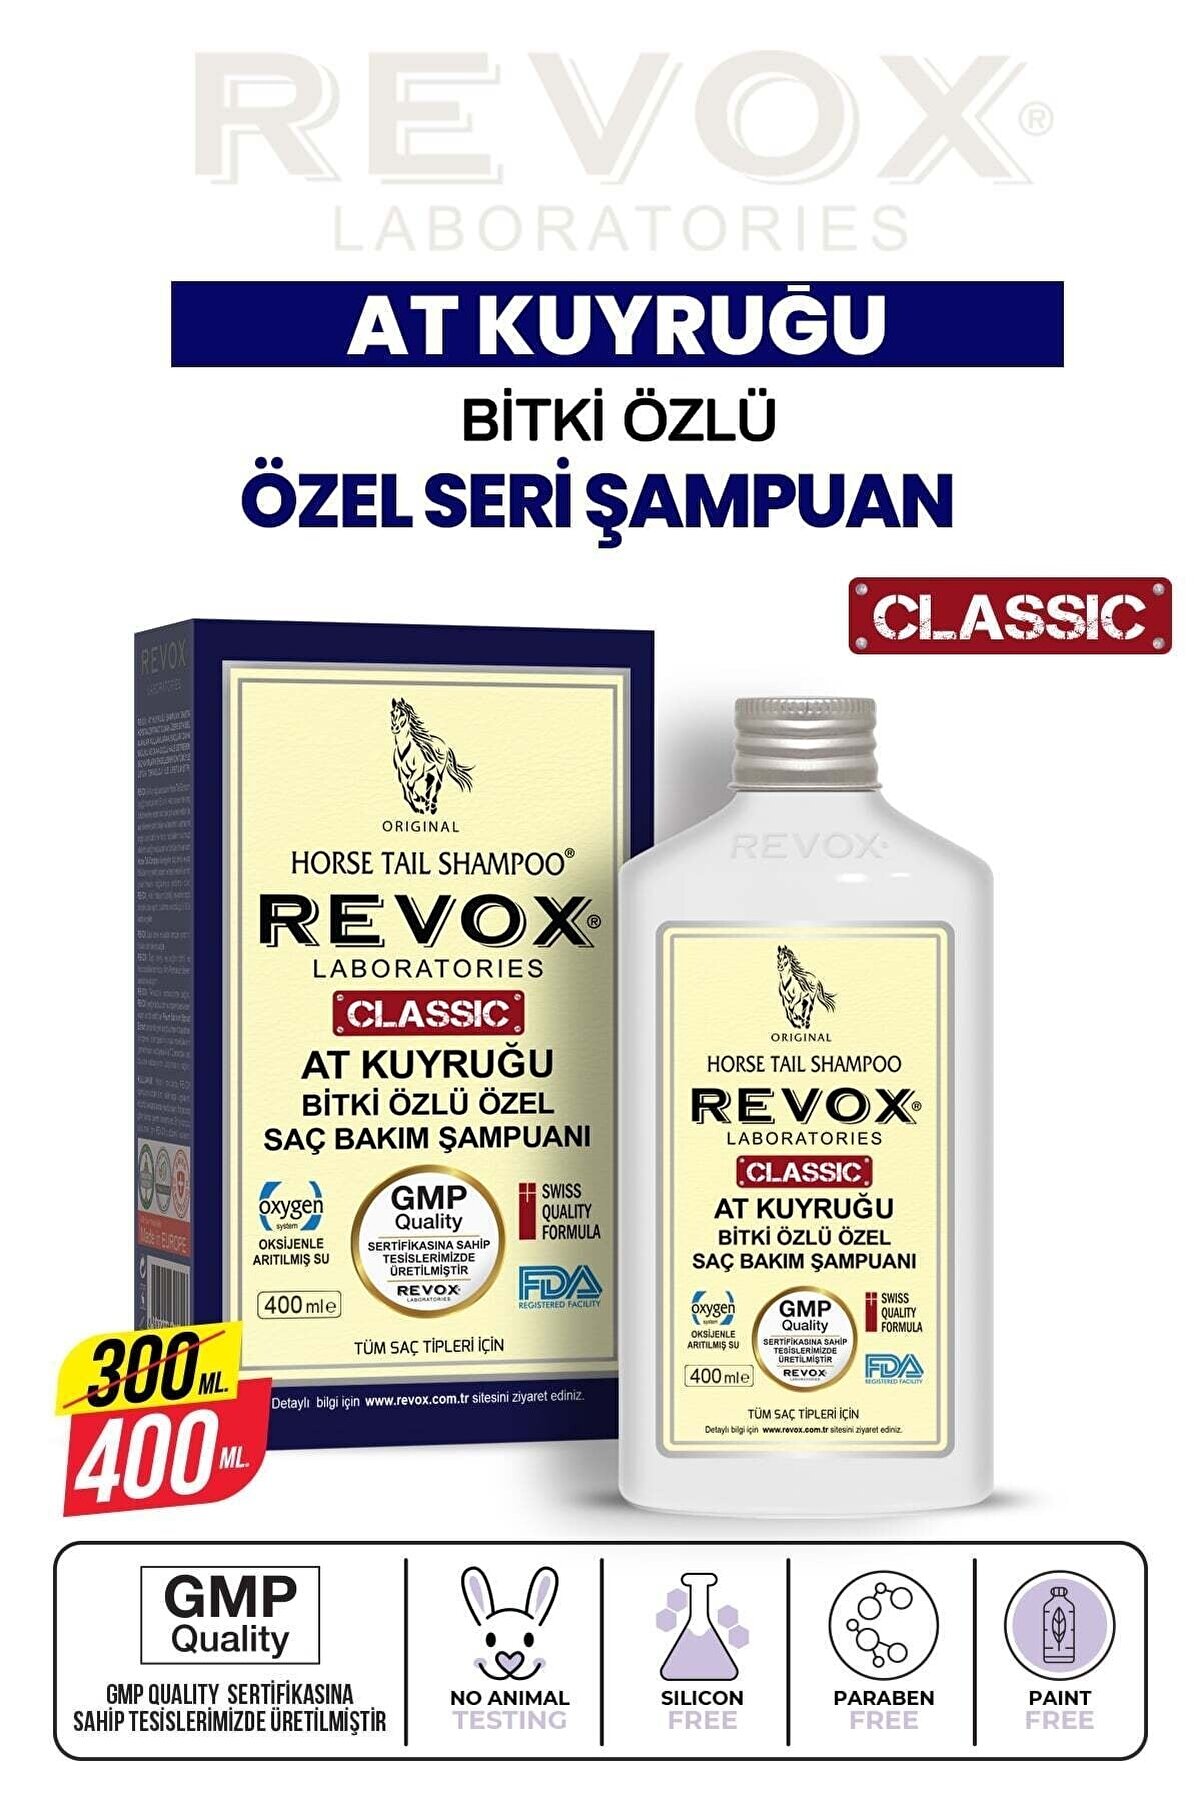 Revox At Kuyruğu Bitki Özlü Saç Dökülme Karşıtı, Hızlı Uzama Etkili Şampuan Büyük Boy / 400 ml